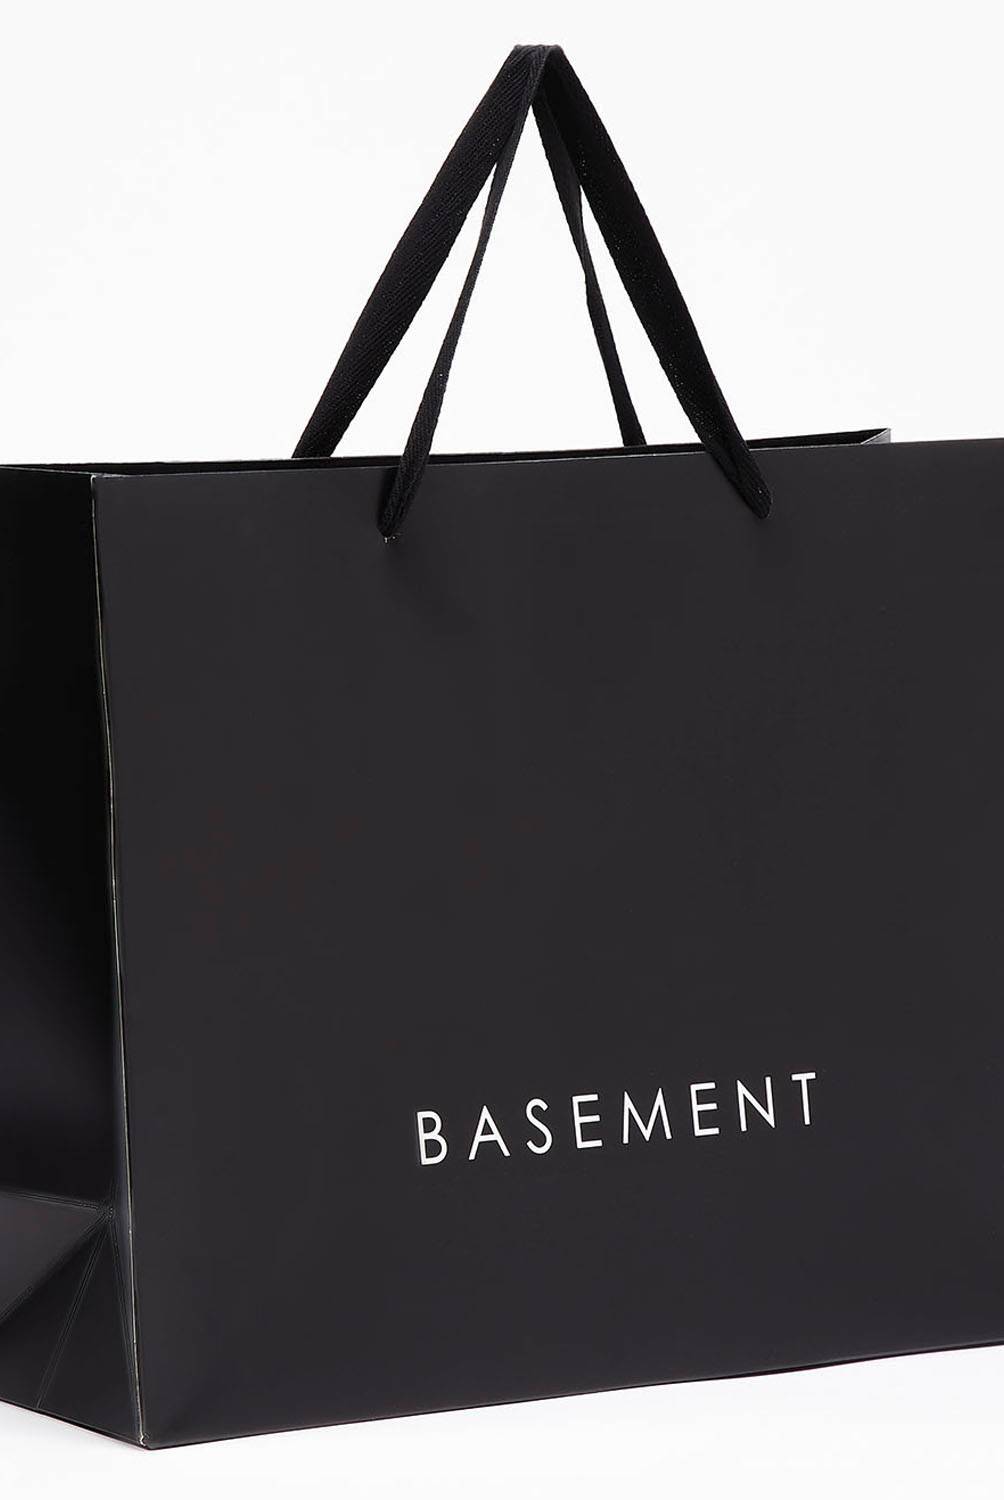 BASEMENT - Basement Camisa Casual Manga Corta Viscosa Hombre con Bolsa de Regalo